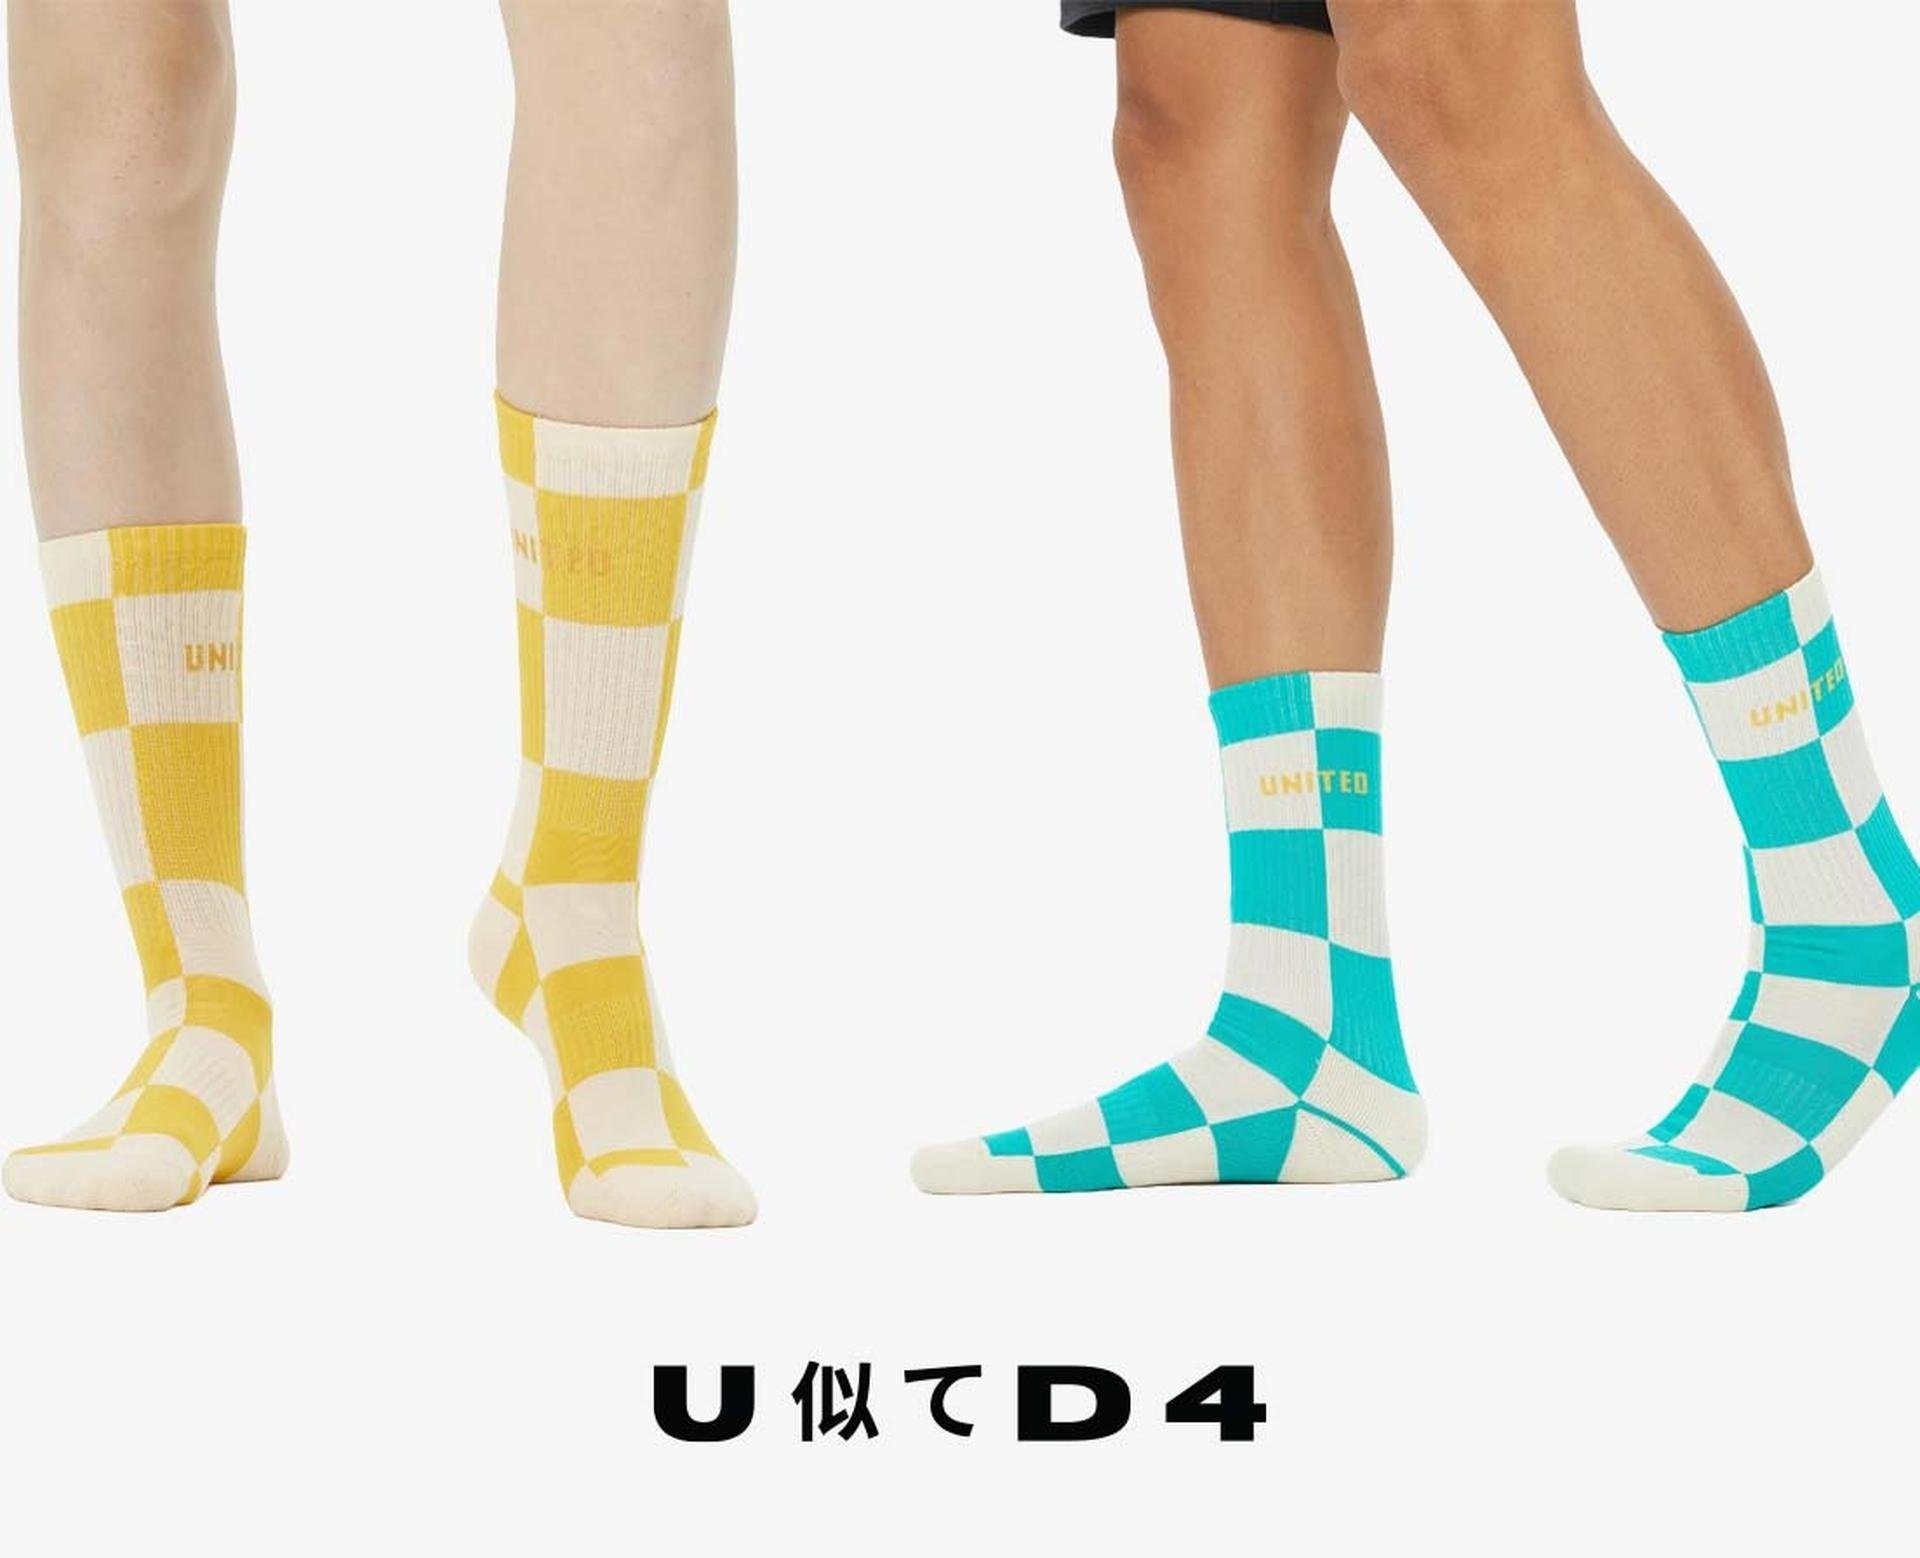 United4 hediye çorap kampanyası